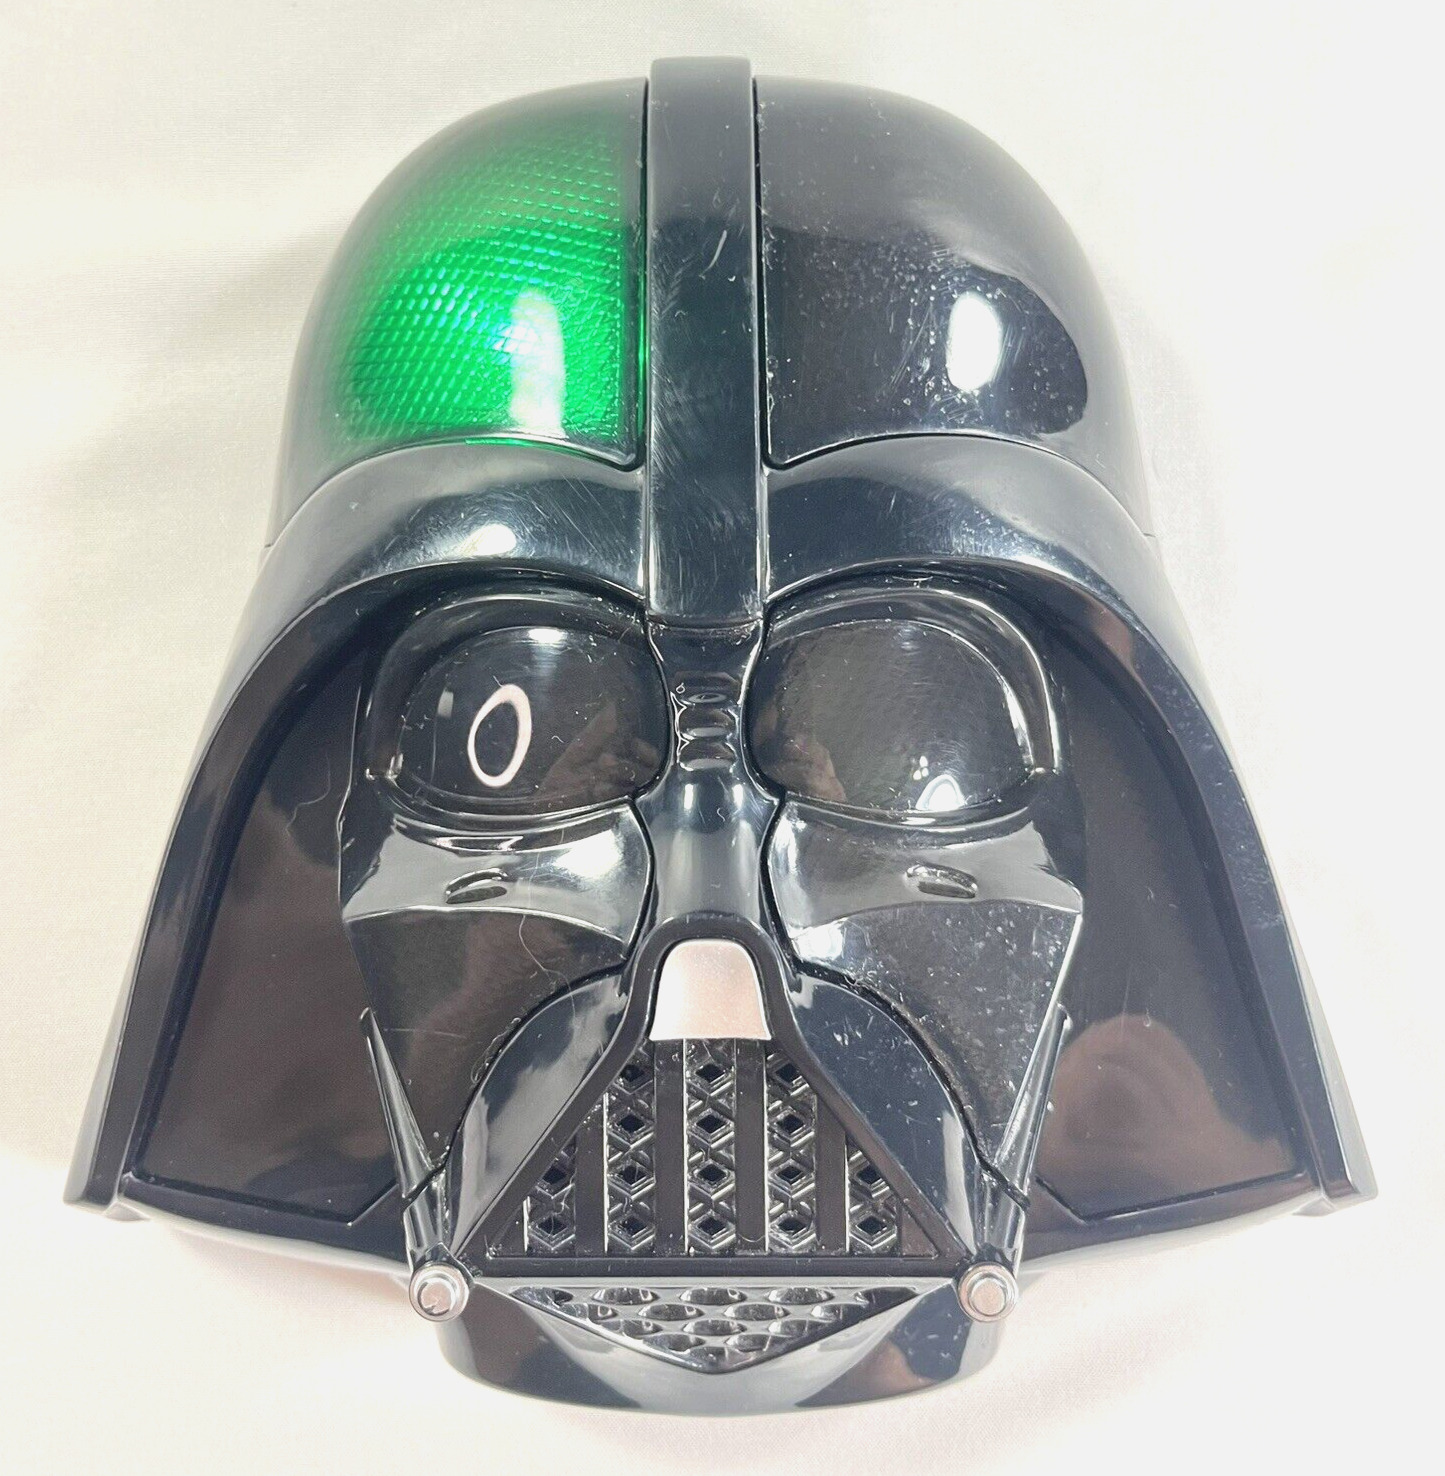 2013 Hasbro Star Wars DARTH VADER Talking Voice Helmet Mask Tested